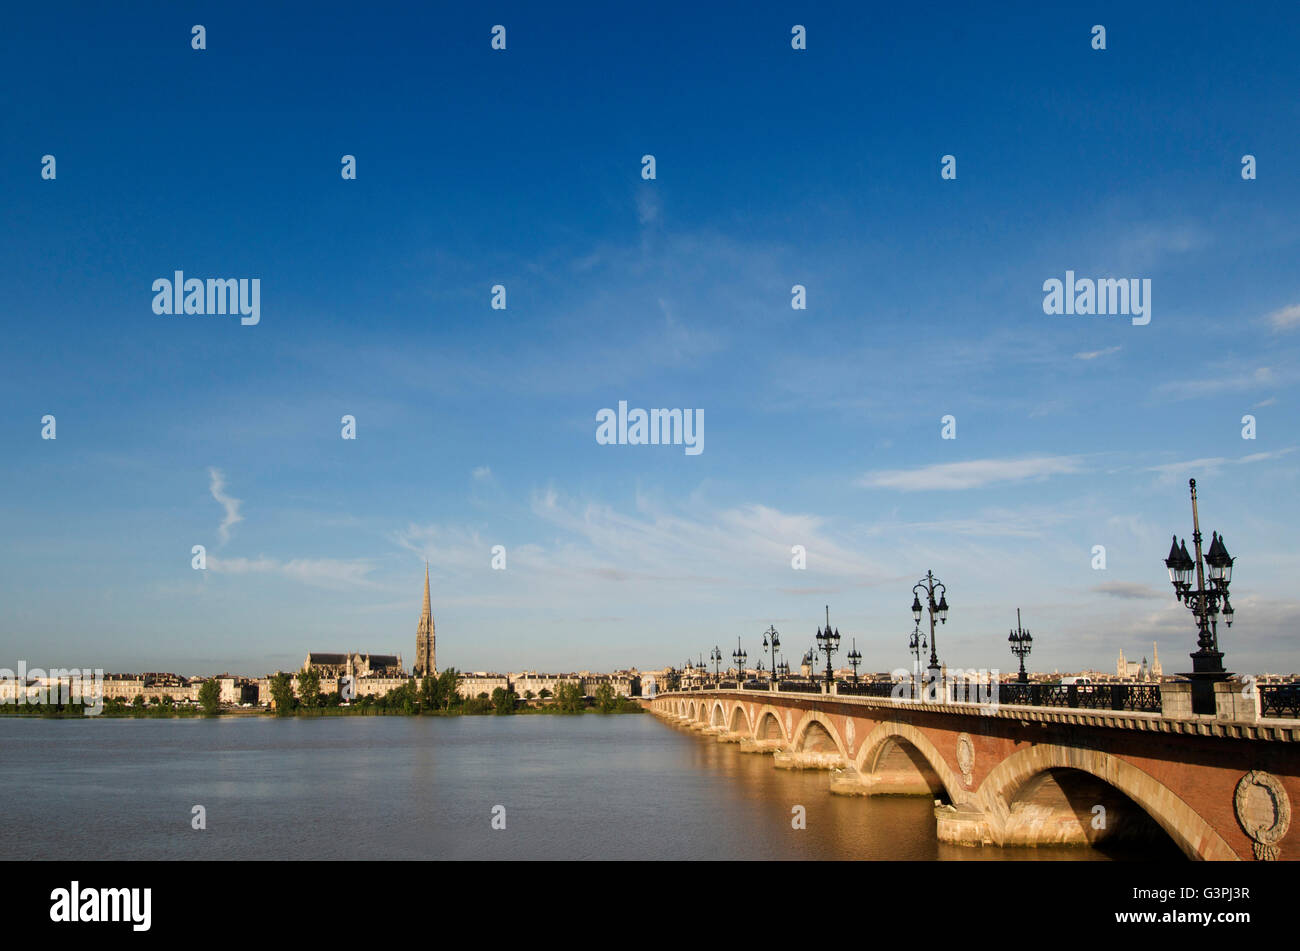 The Pont de Pierre crossing the river Garonne, Bordeaux, Aquitaine, France, Europe Stock Photo